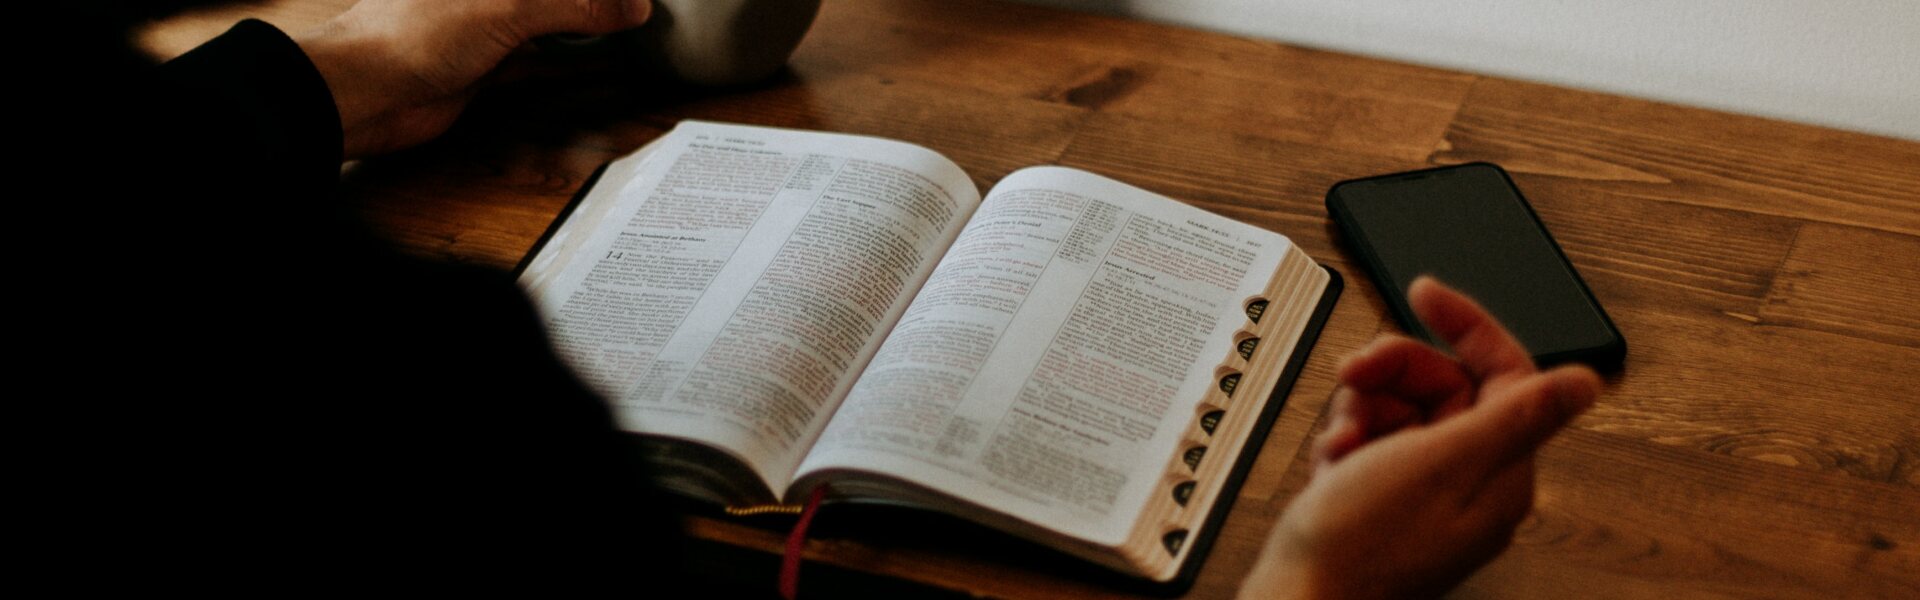 Man liest alleine in der Bibel